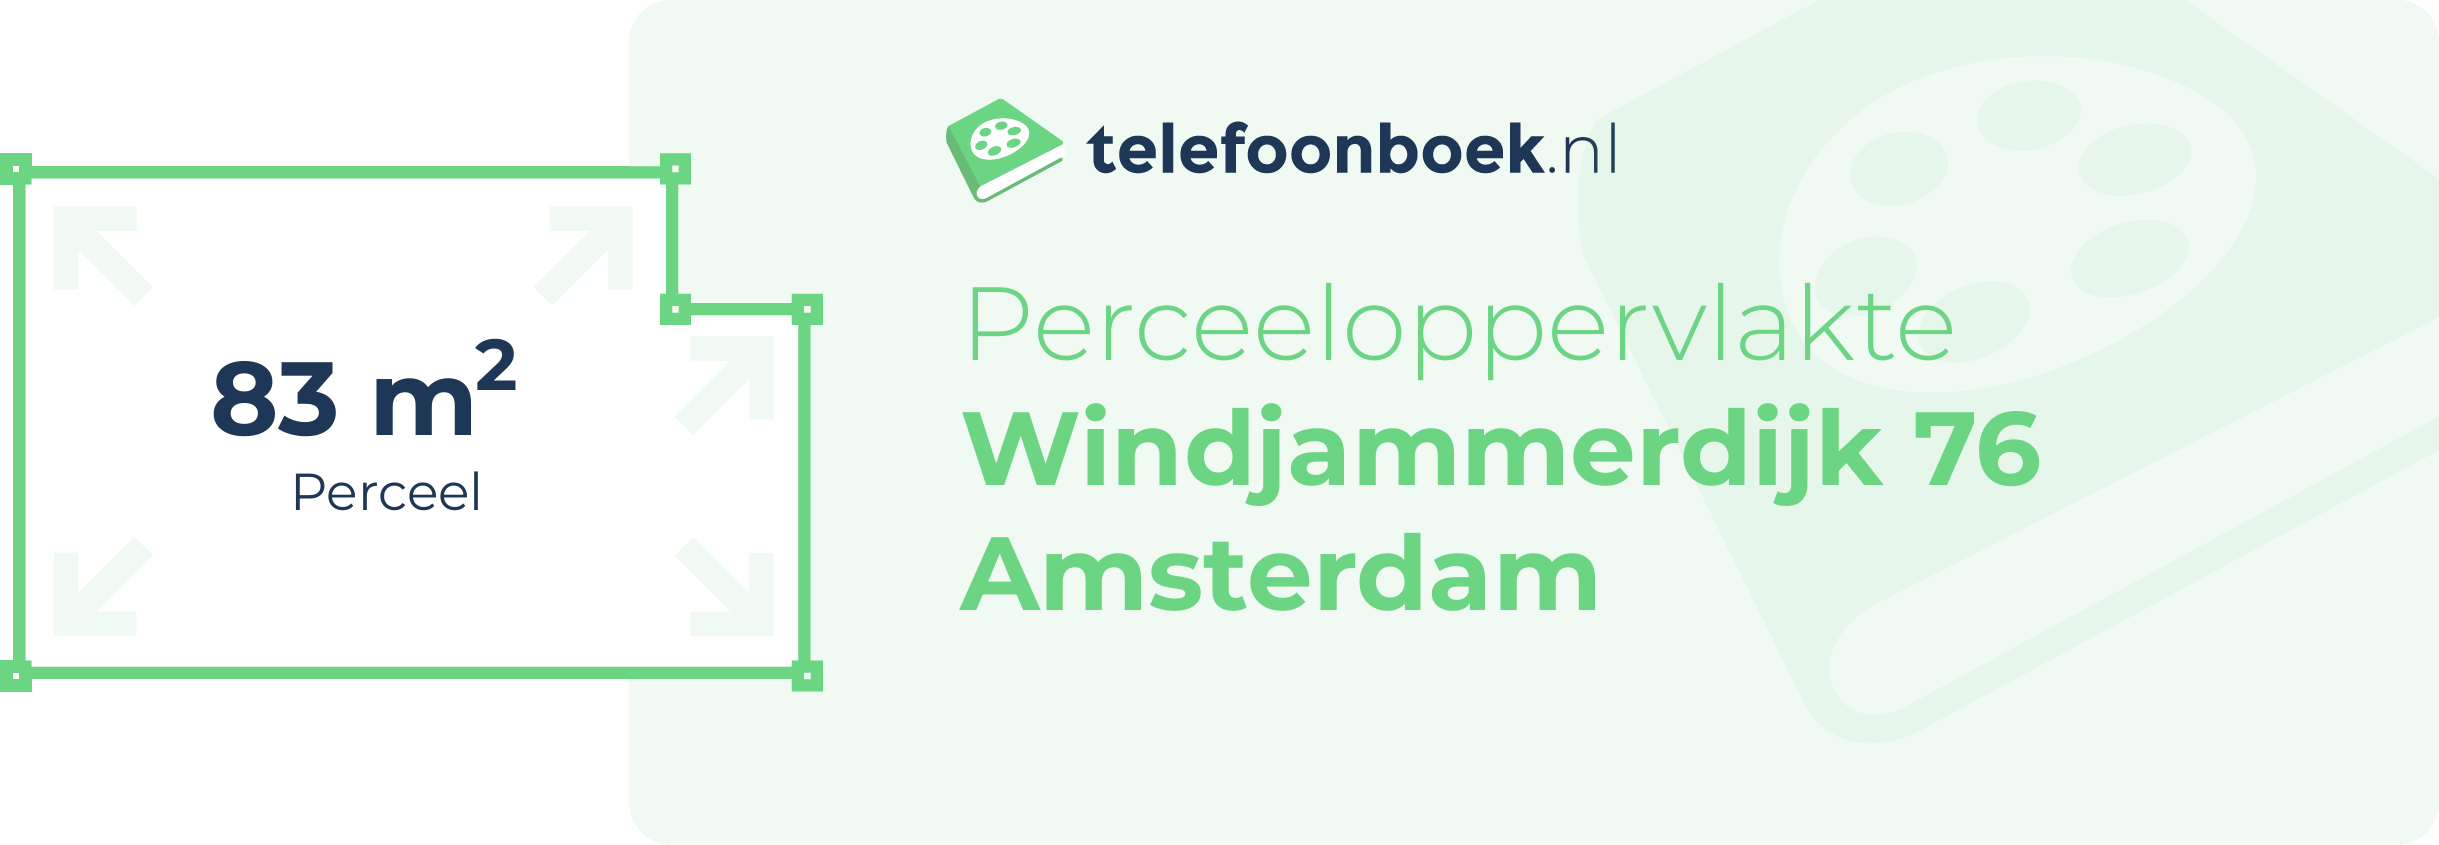 Perceeloppervlakte Windjammerdijk 76 Amsterdam